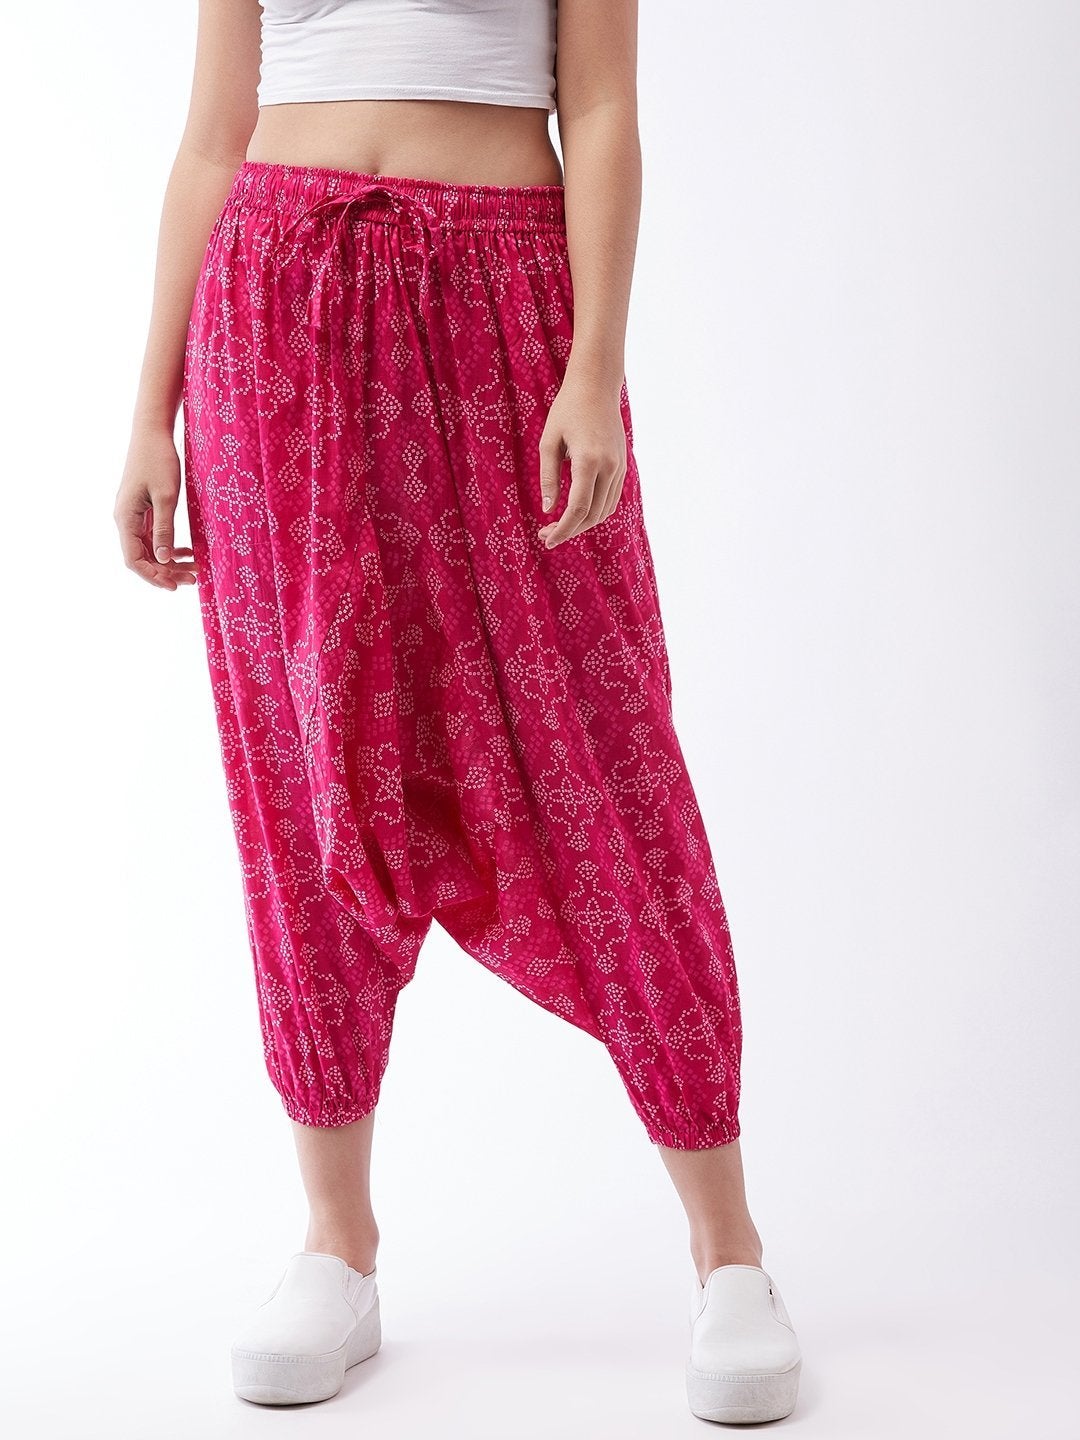 Women's Pink Bandhini Harem Pants For Teens - InWeave